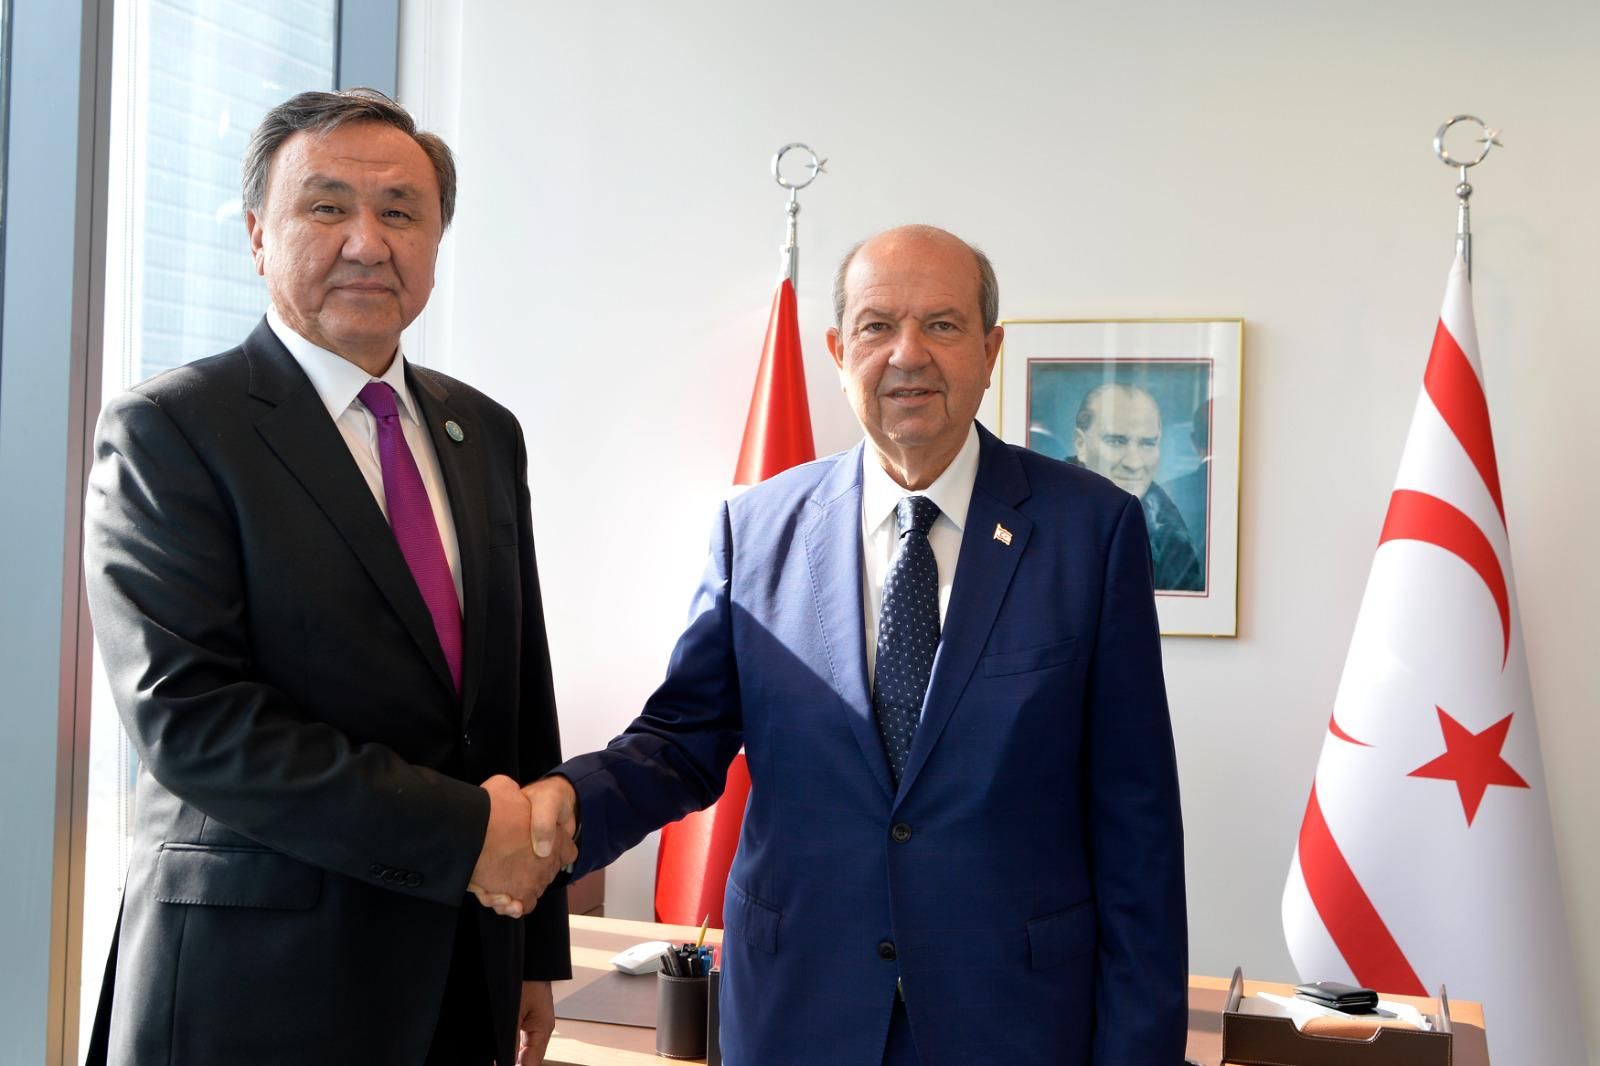 KKTC Cumhurbaşkanlığı - New York’ta bulunan Cumhurbaşkanı Ersin Tatar, Türk Devletleri Teşkilatı Genel Sekreteri Kubaniçbek Ömüraliyev’i kabul etti